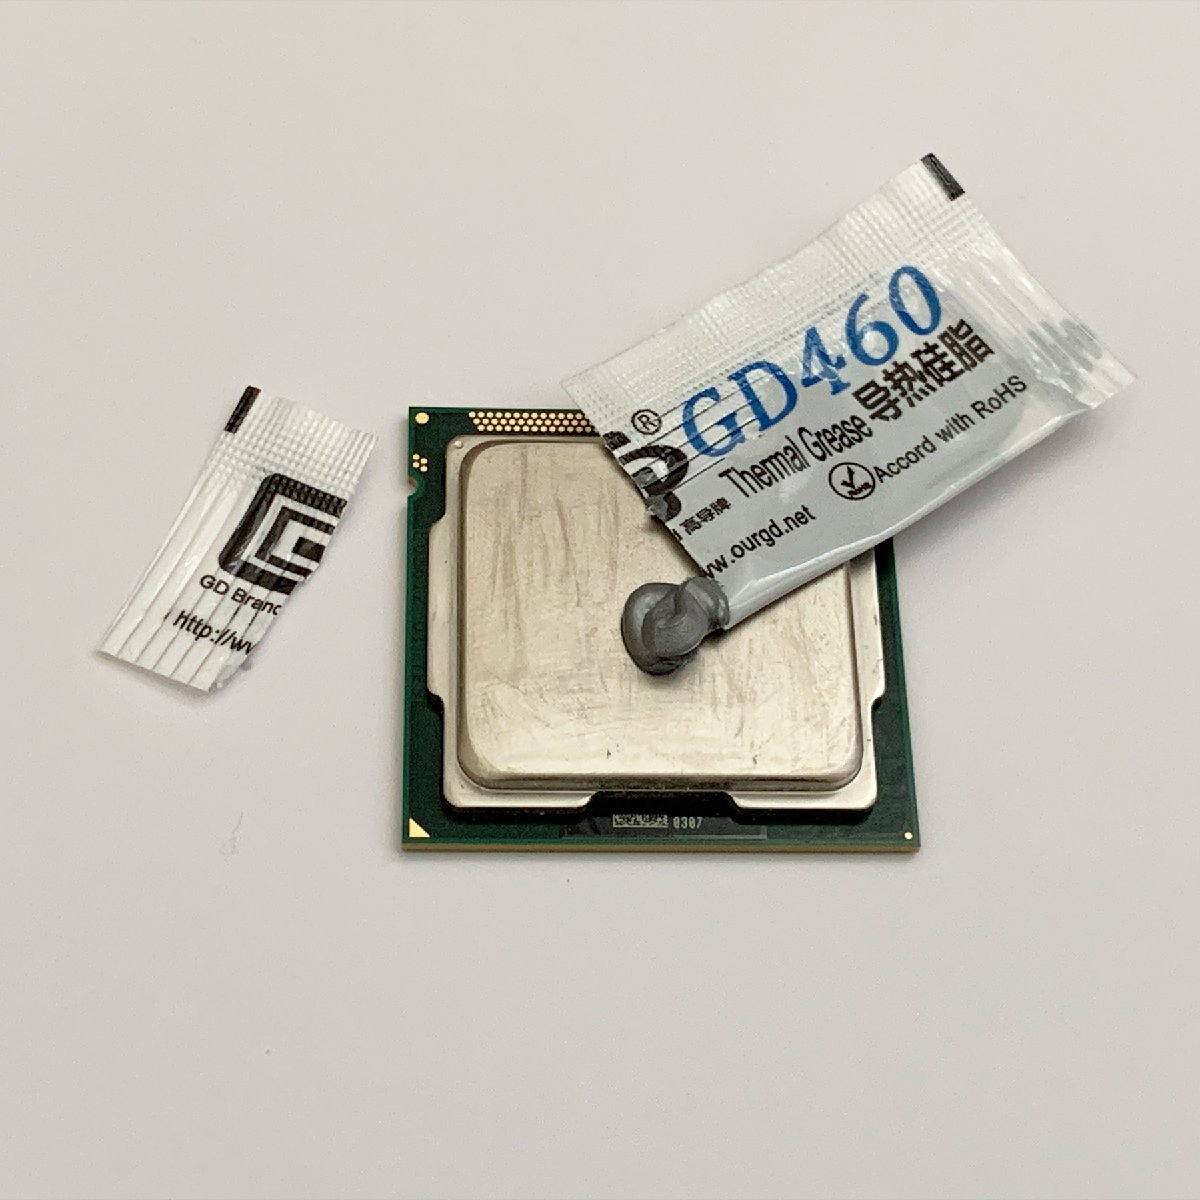 CPU смазка GD460 высокая эффективность силикон теплоотвод используя порез . модель изоляция . модель x 2 выпуск 